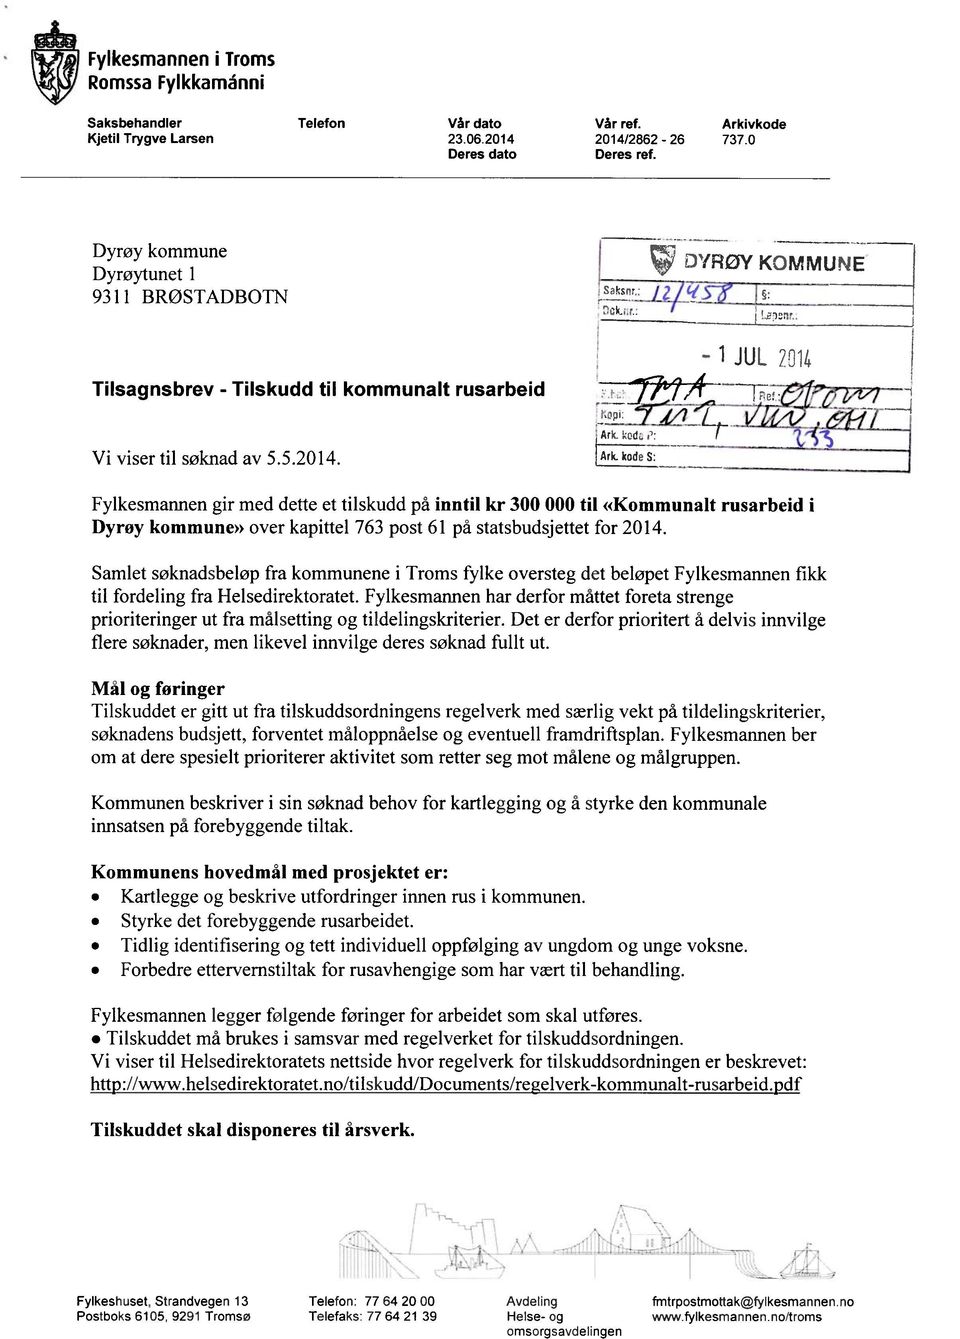 kodeS: Fylkesmannen gir med dette et tilskudd på inntil kr 300 000 til «Kommunalt rusarbeid i Dyrøy kommune» over kapittel 763 post 61 på statsbudsjettet for 2014.